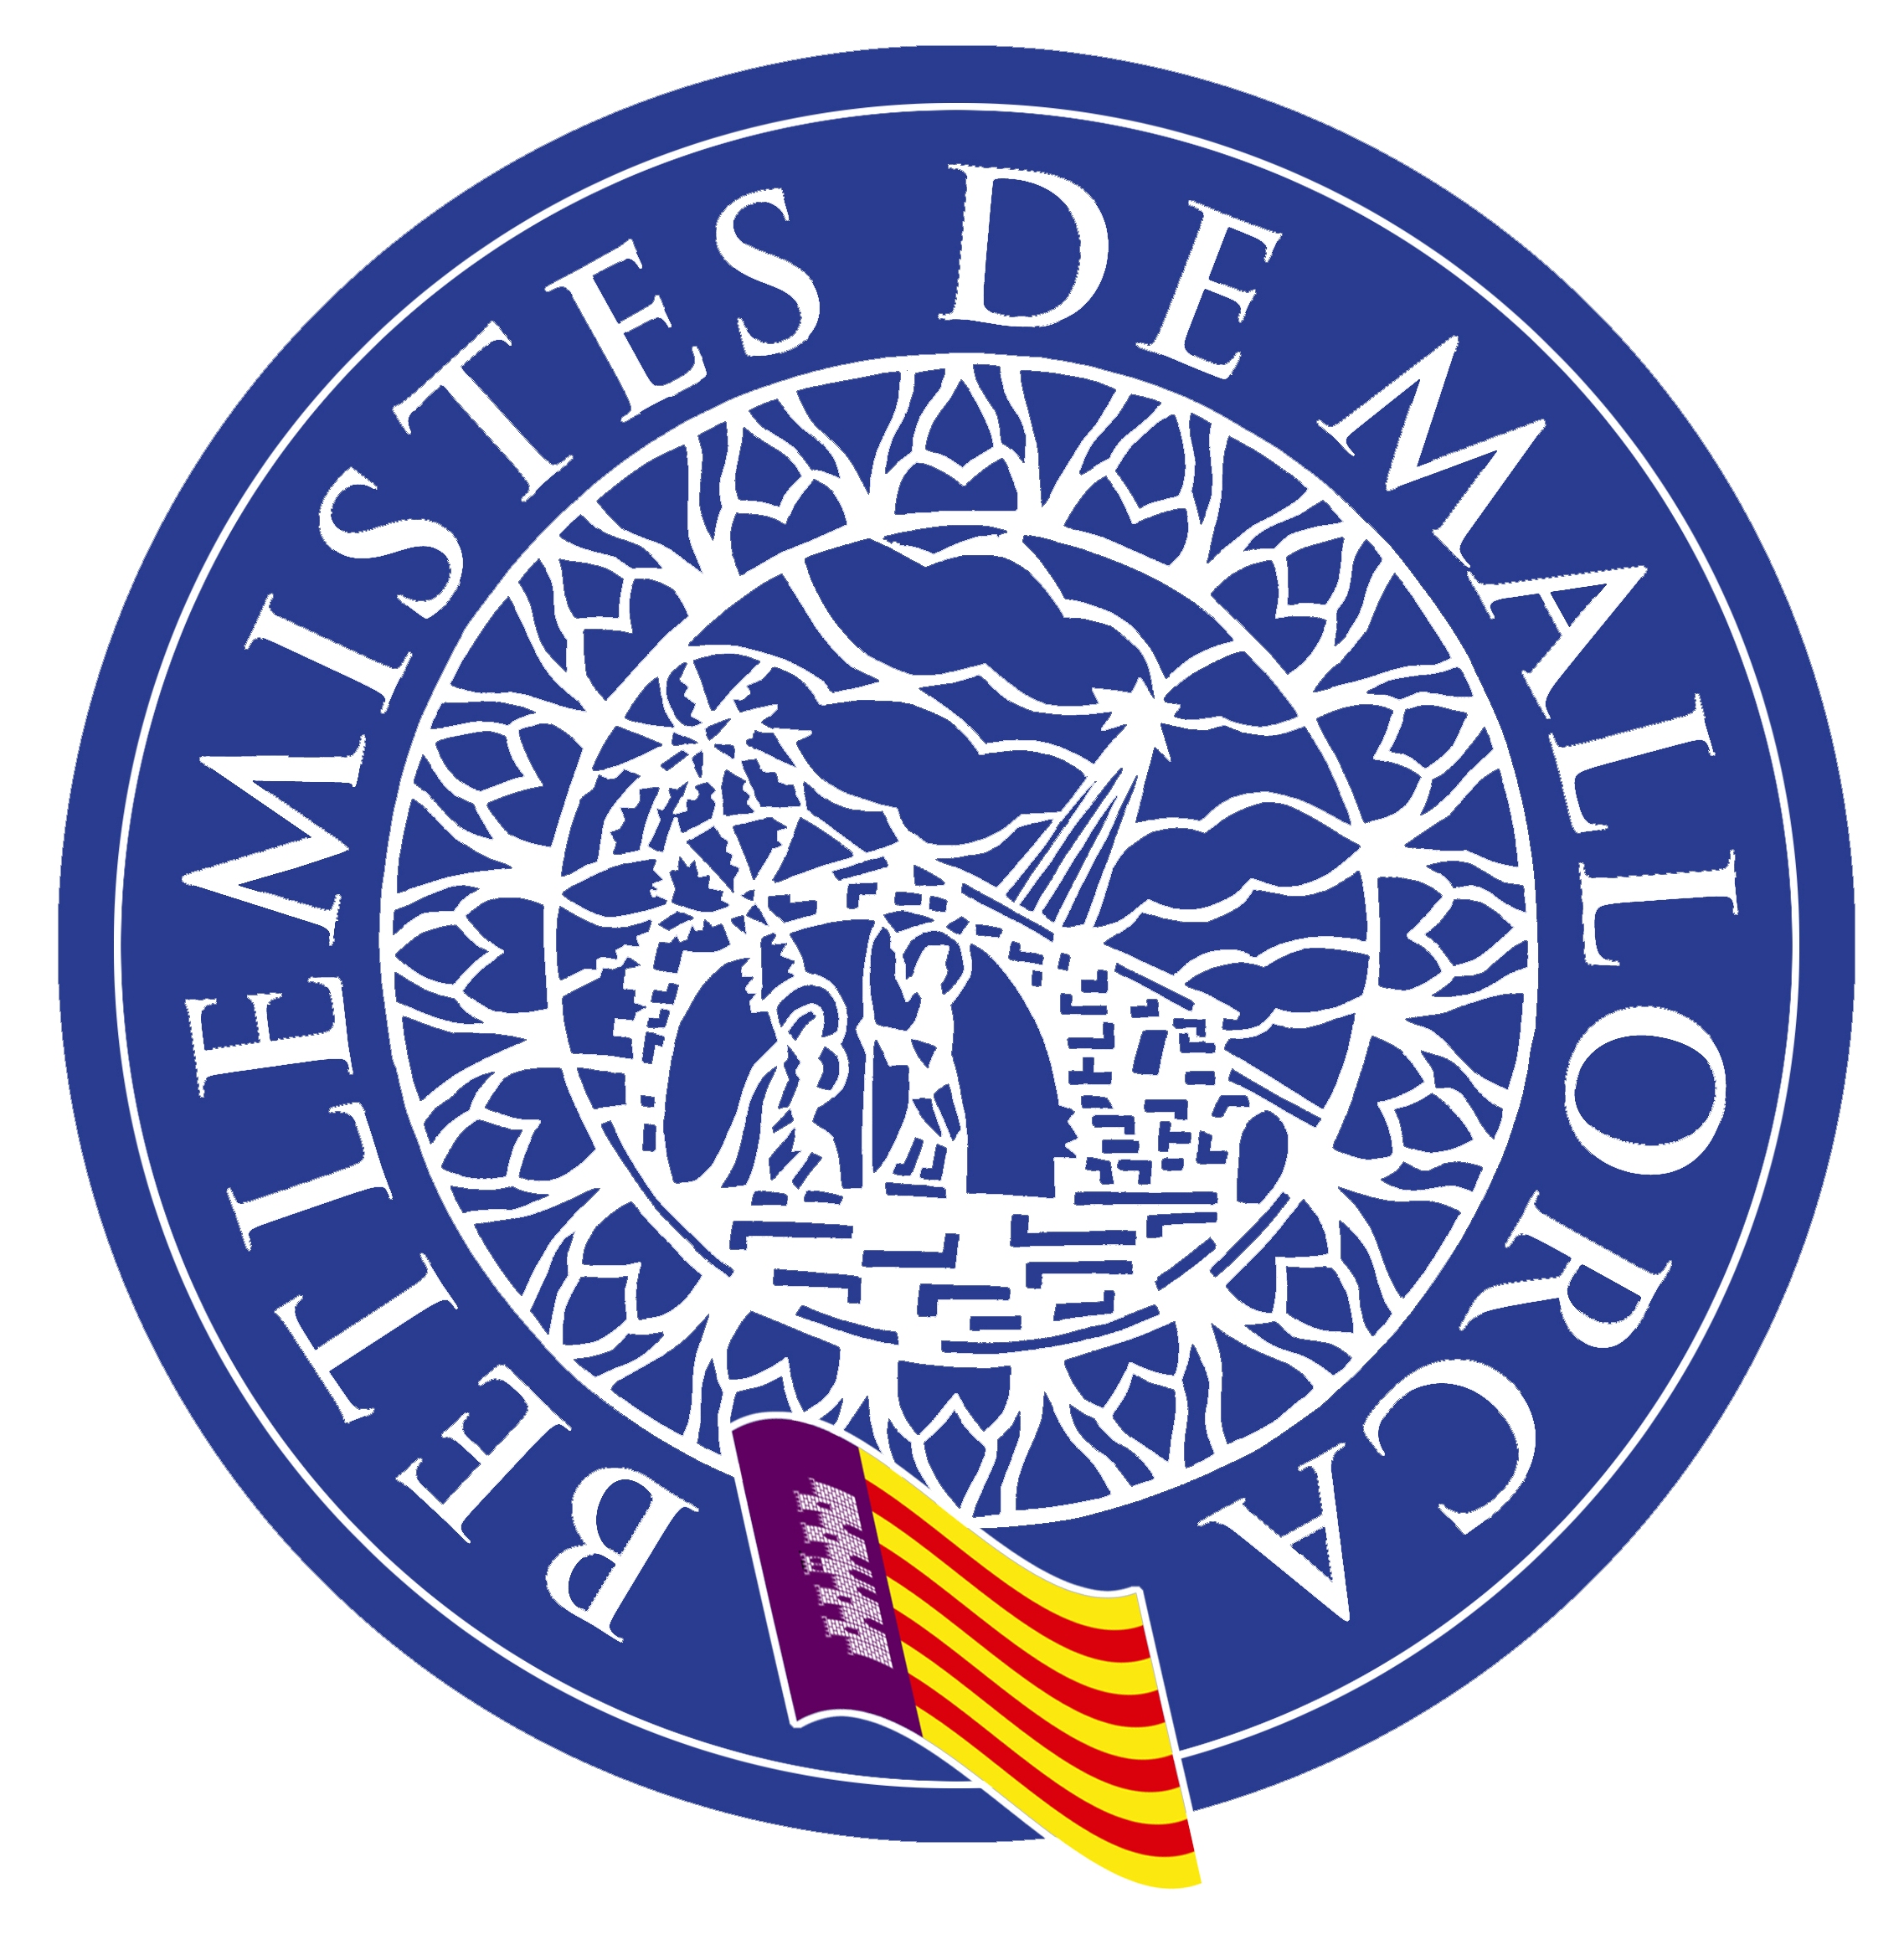 Isologo de la asociación Betlemistes de Mallorca, cuya denominación fue Associació de Betlemistes Francisco Roselló de Balears desde su fundación el 31/03/2001 hasta el 18/02/2011